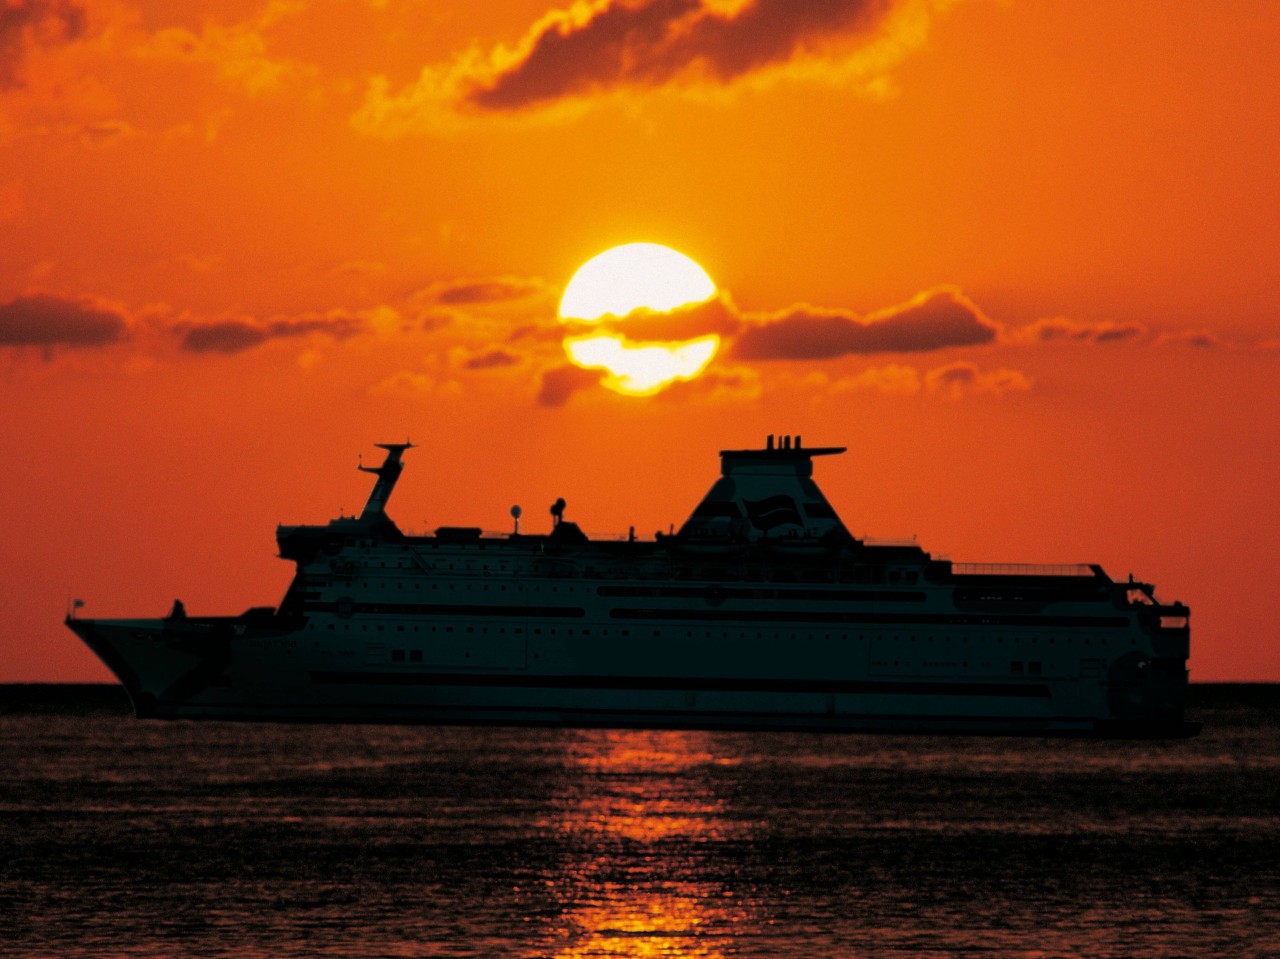 Viele Menschen lieben es die Sonnenuntergänge an Bord einer Kreuzfahrt zu beobachten. (Symbolbild)